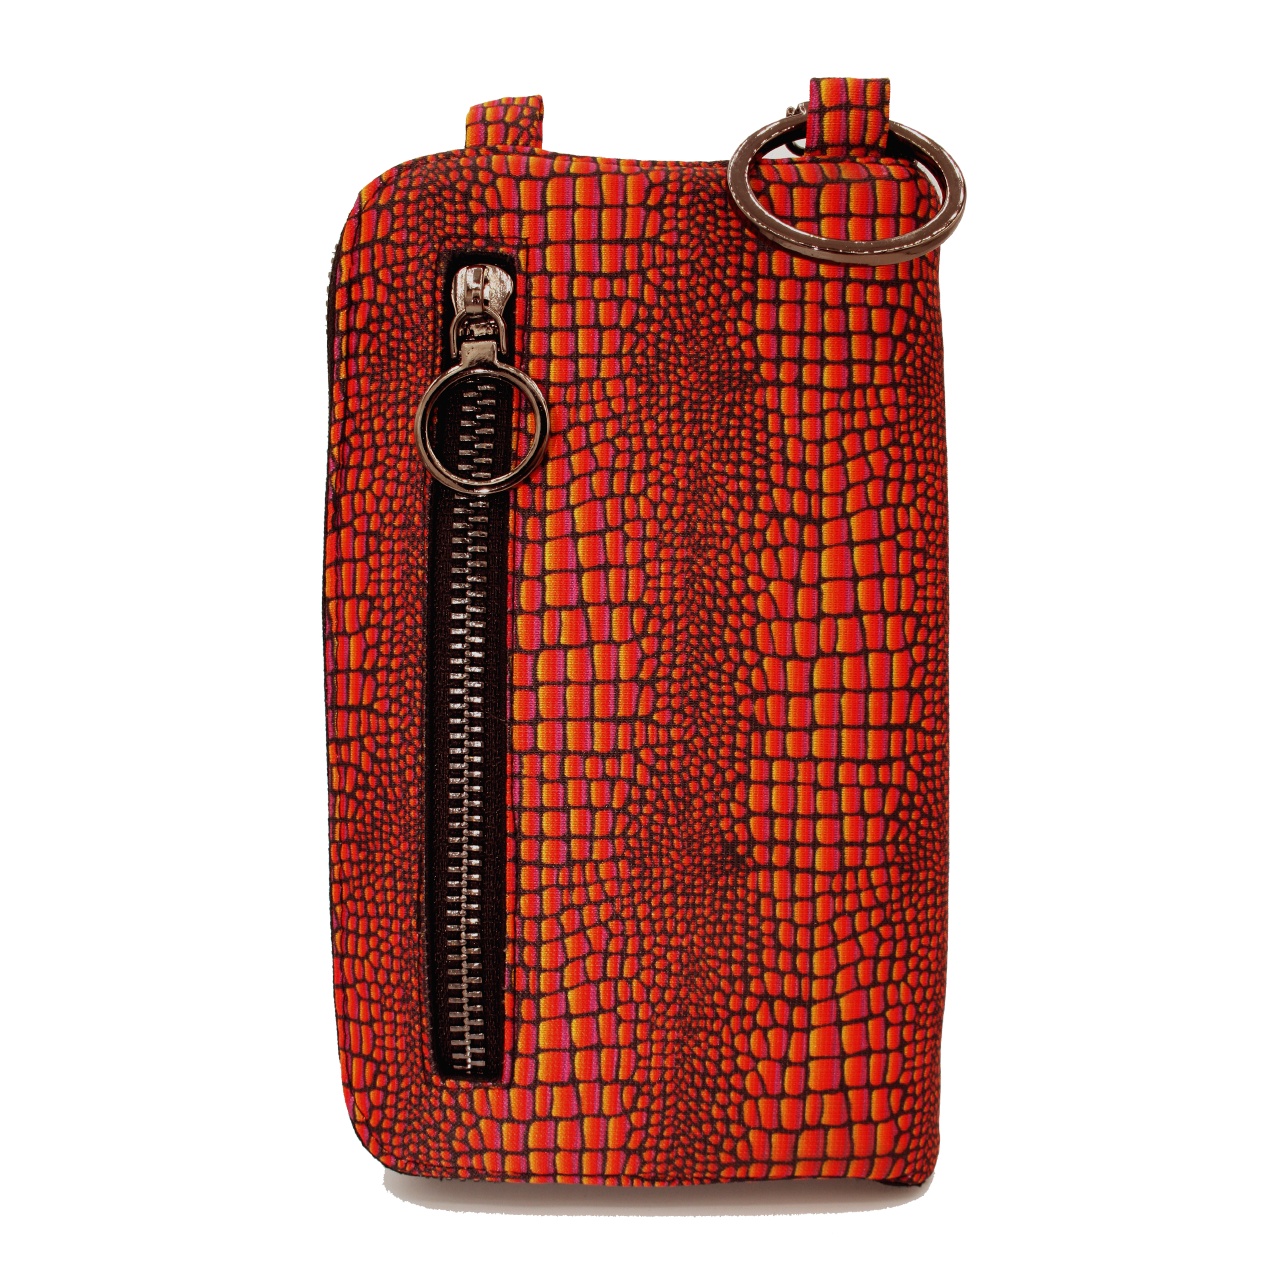 Seegarn - Smart-Bag / 2in1 Handy-Tasche und Geldbeutel (MB05)